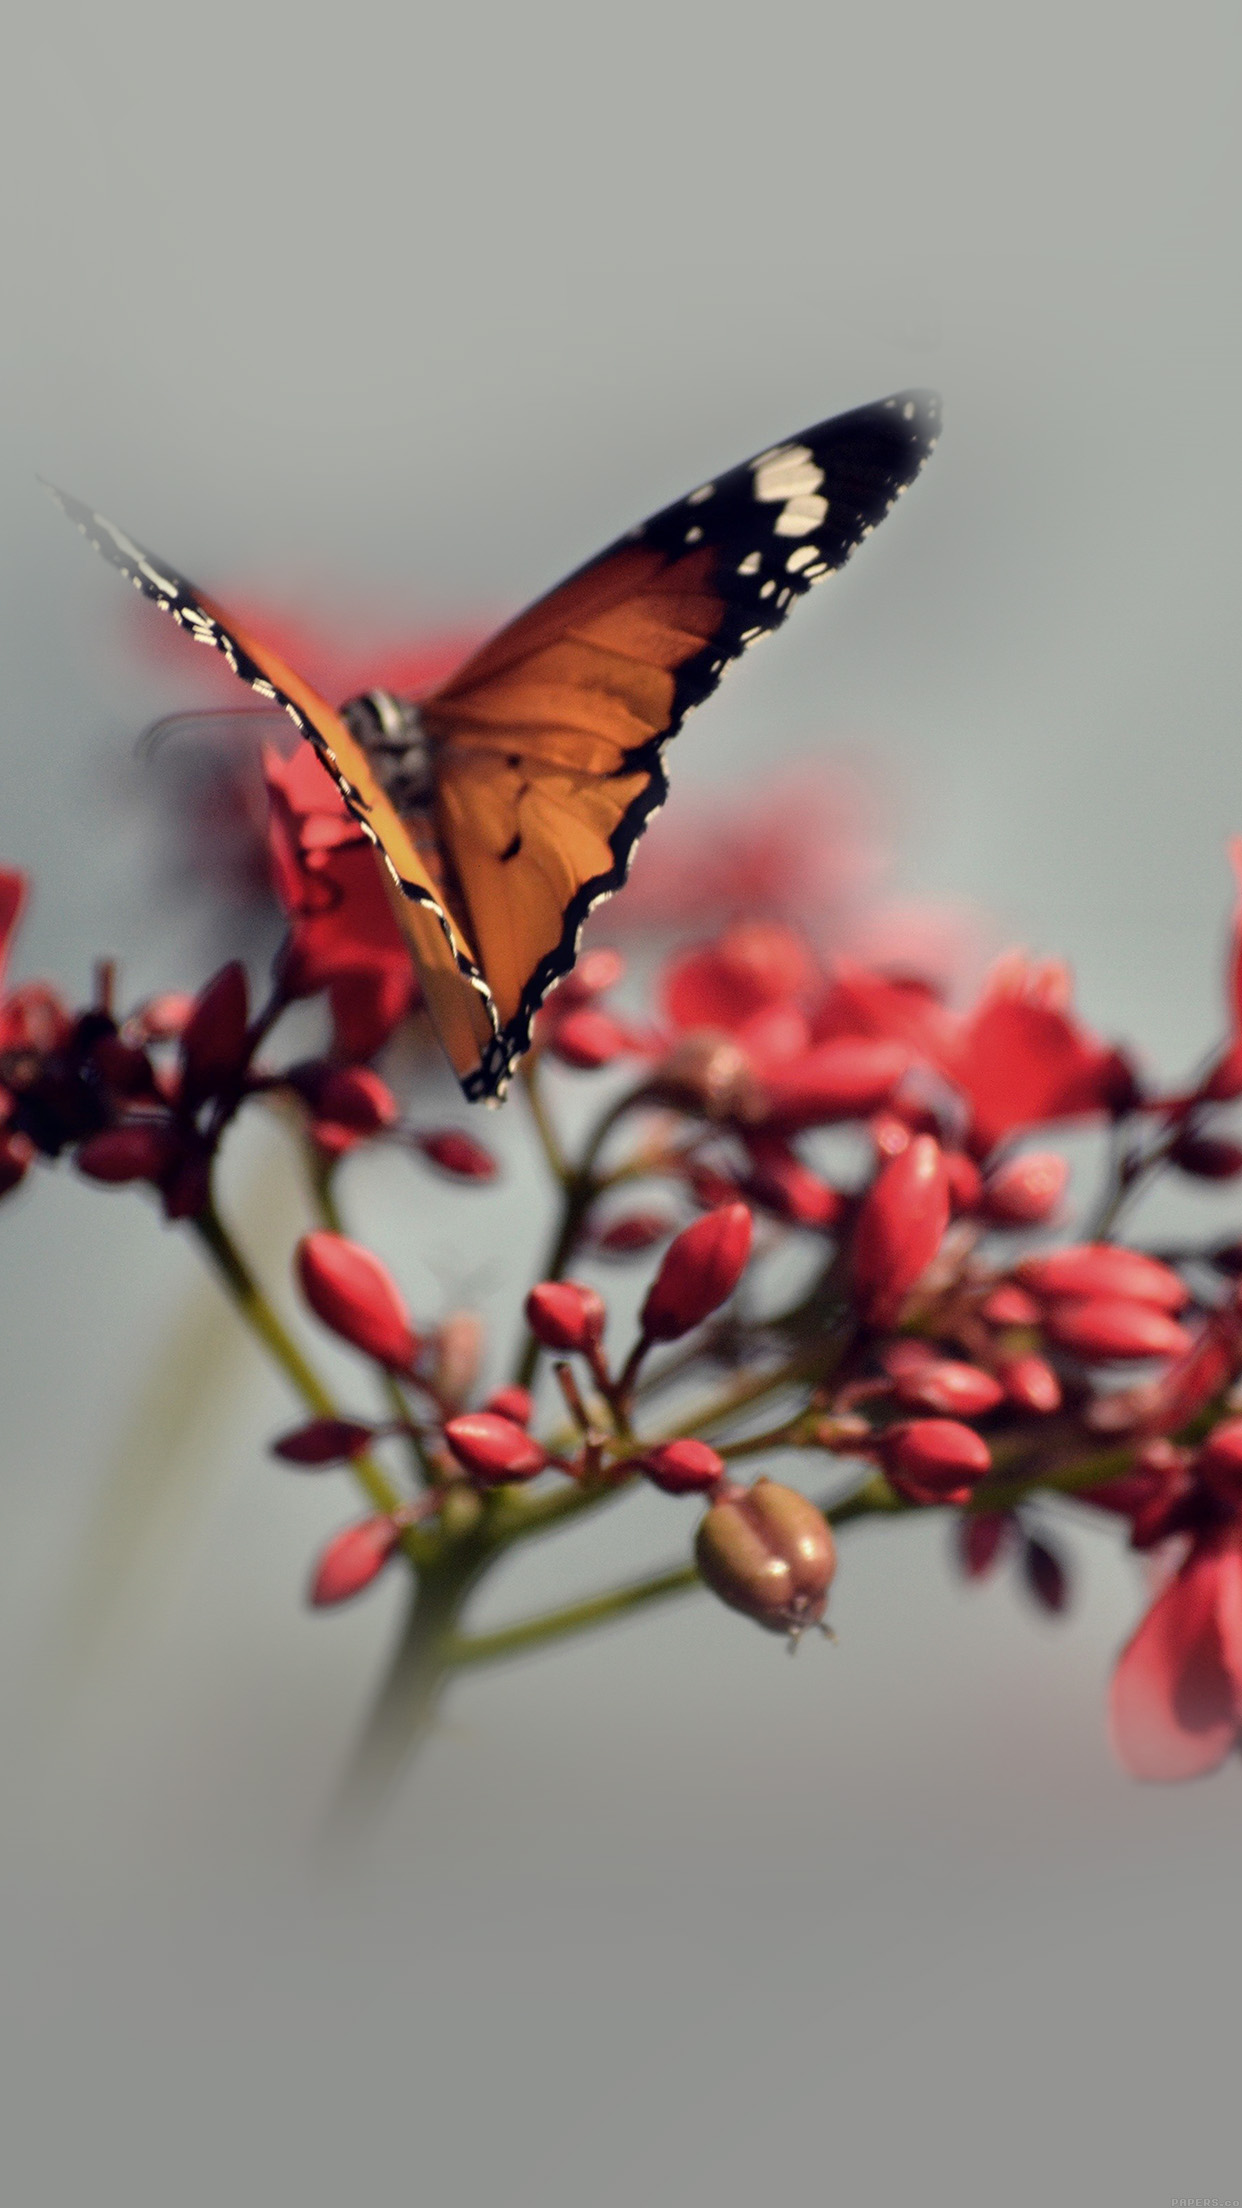 fond d'écran fleur iphone se,papillon,sous genre de cynthia,insecte,papillons et papillons,invertébré